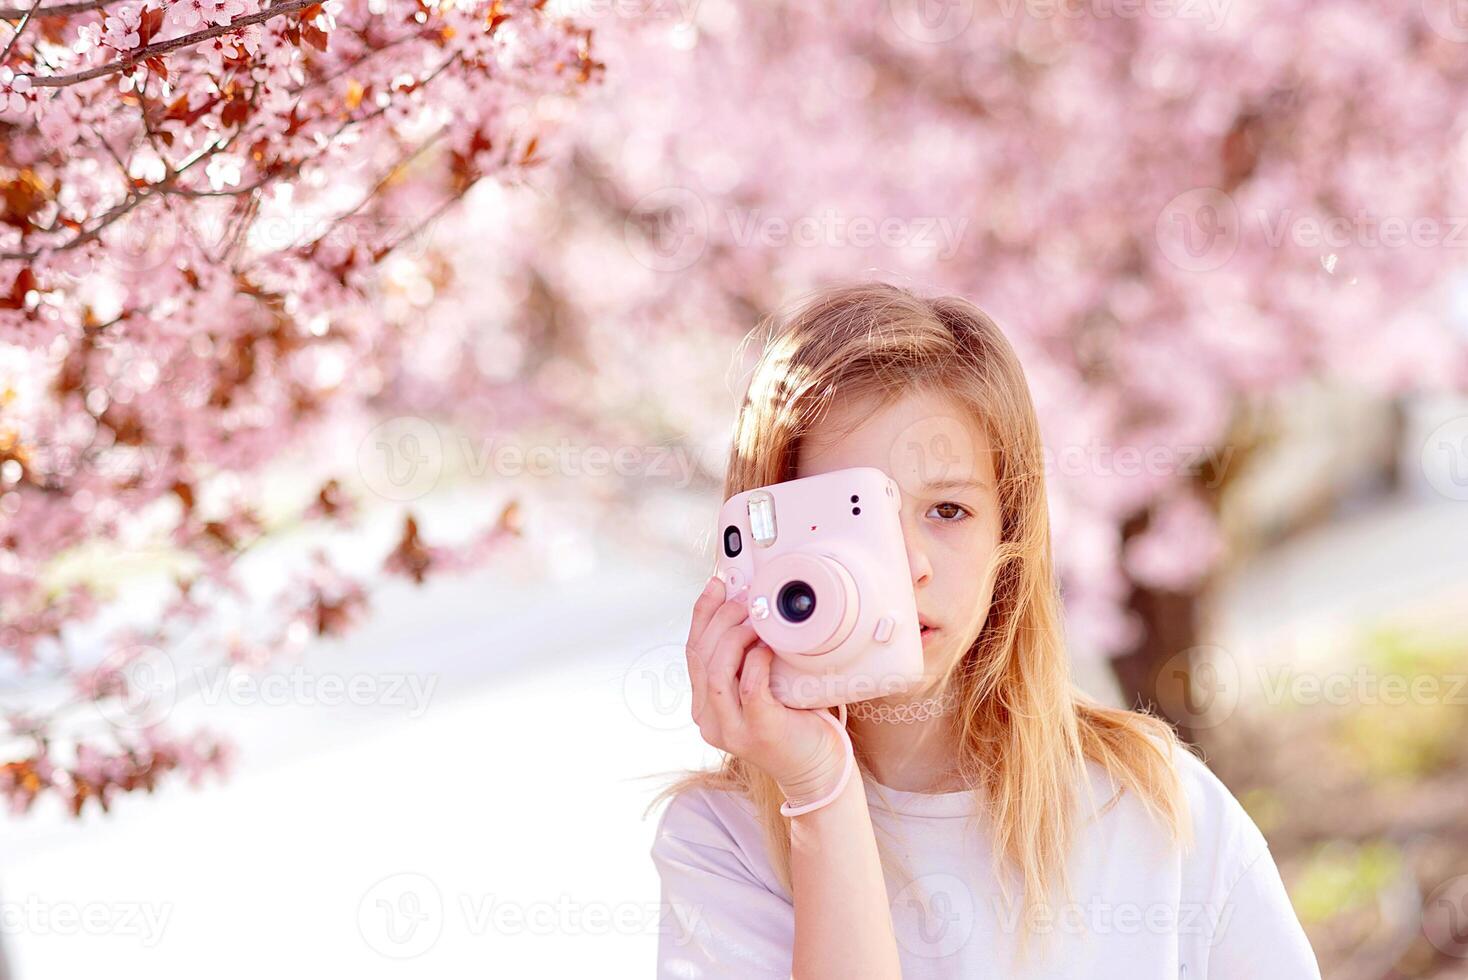 sakura o Cereza florecer en primavera temporada con lleno floración rosado flor viaje concep foto